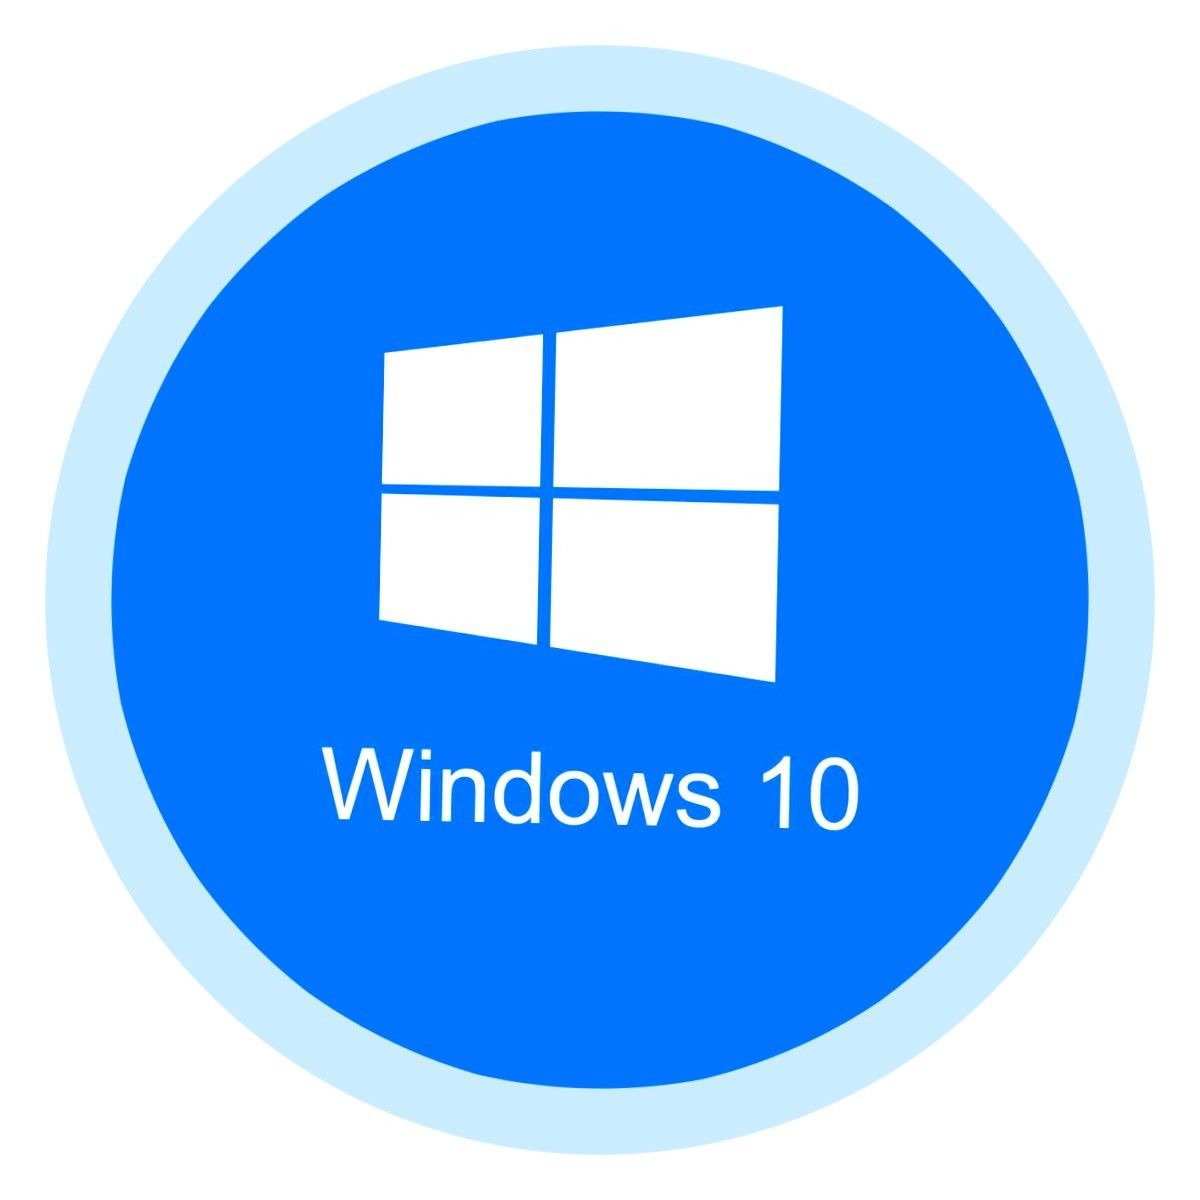 windows 10 pro mega